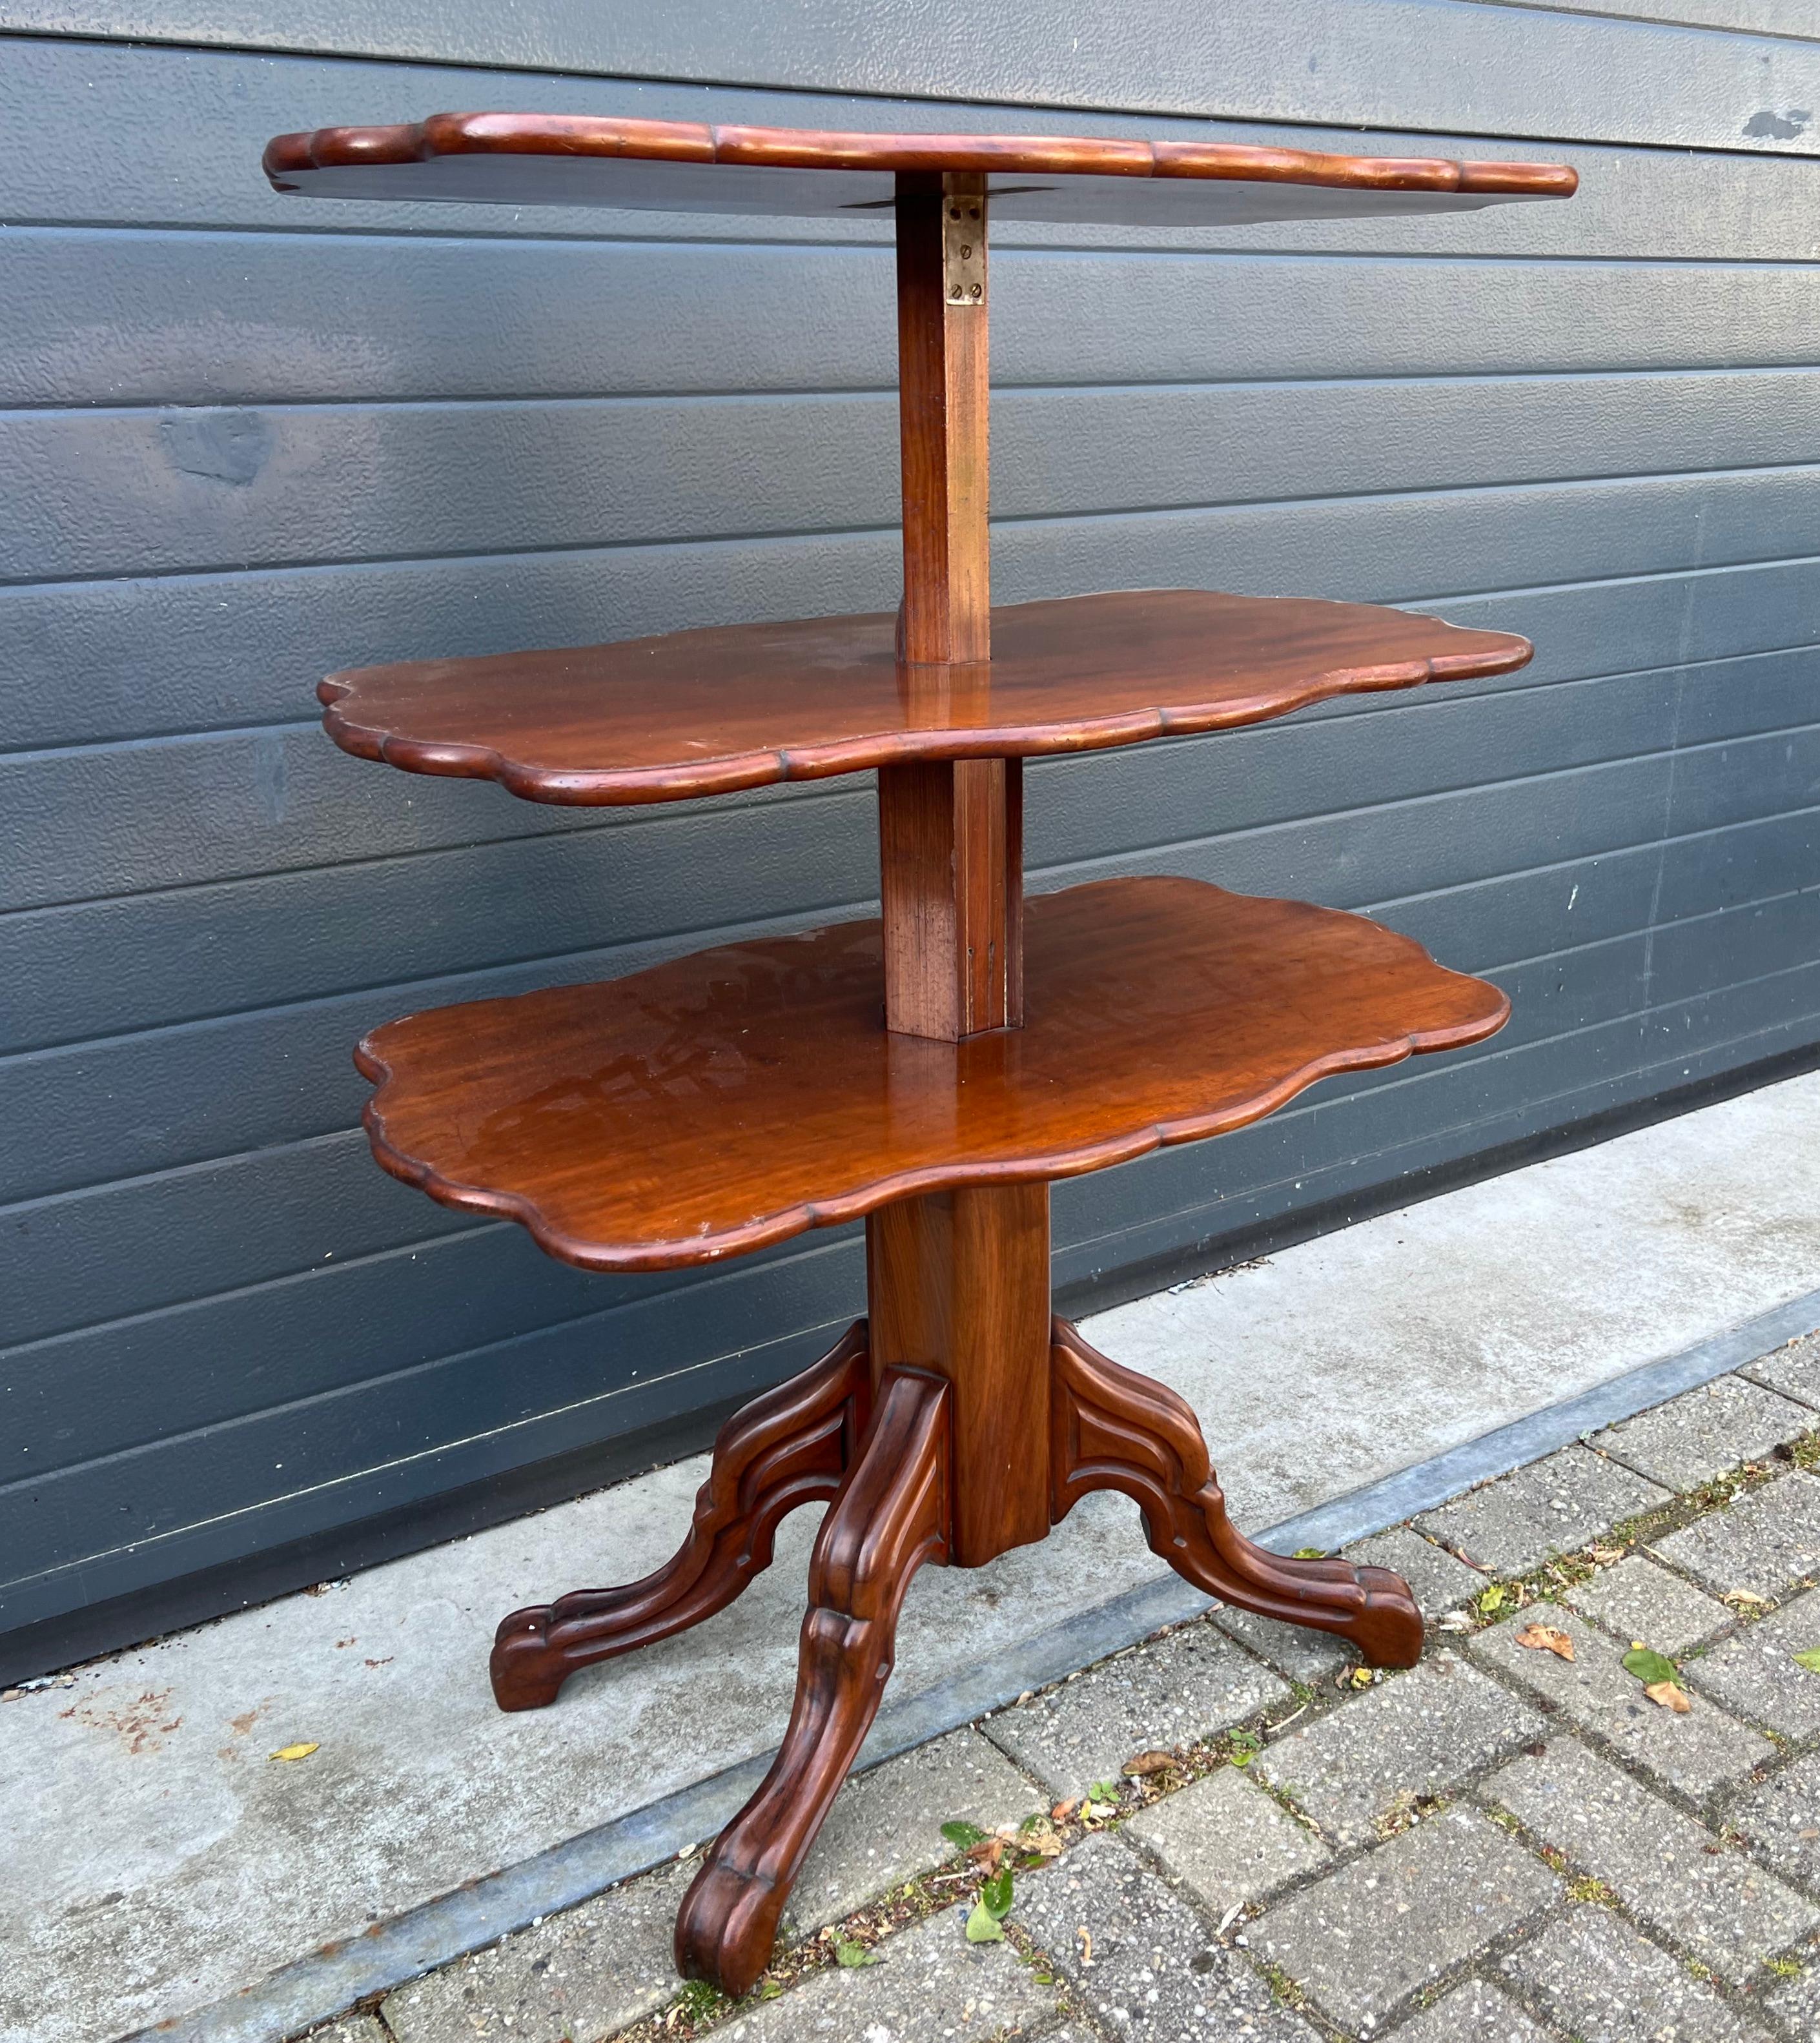 Extraordinaire table monte-plats en bois ancien, fabriquée à la main, Angleterre.

Cette table d'une qualité exceptionnelle et en excellent état est un autre grand exemple du niveau d'exécution atteint en Europe à la fin des années 1800. Fabriqué et